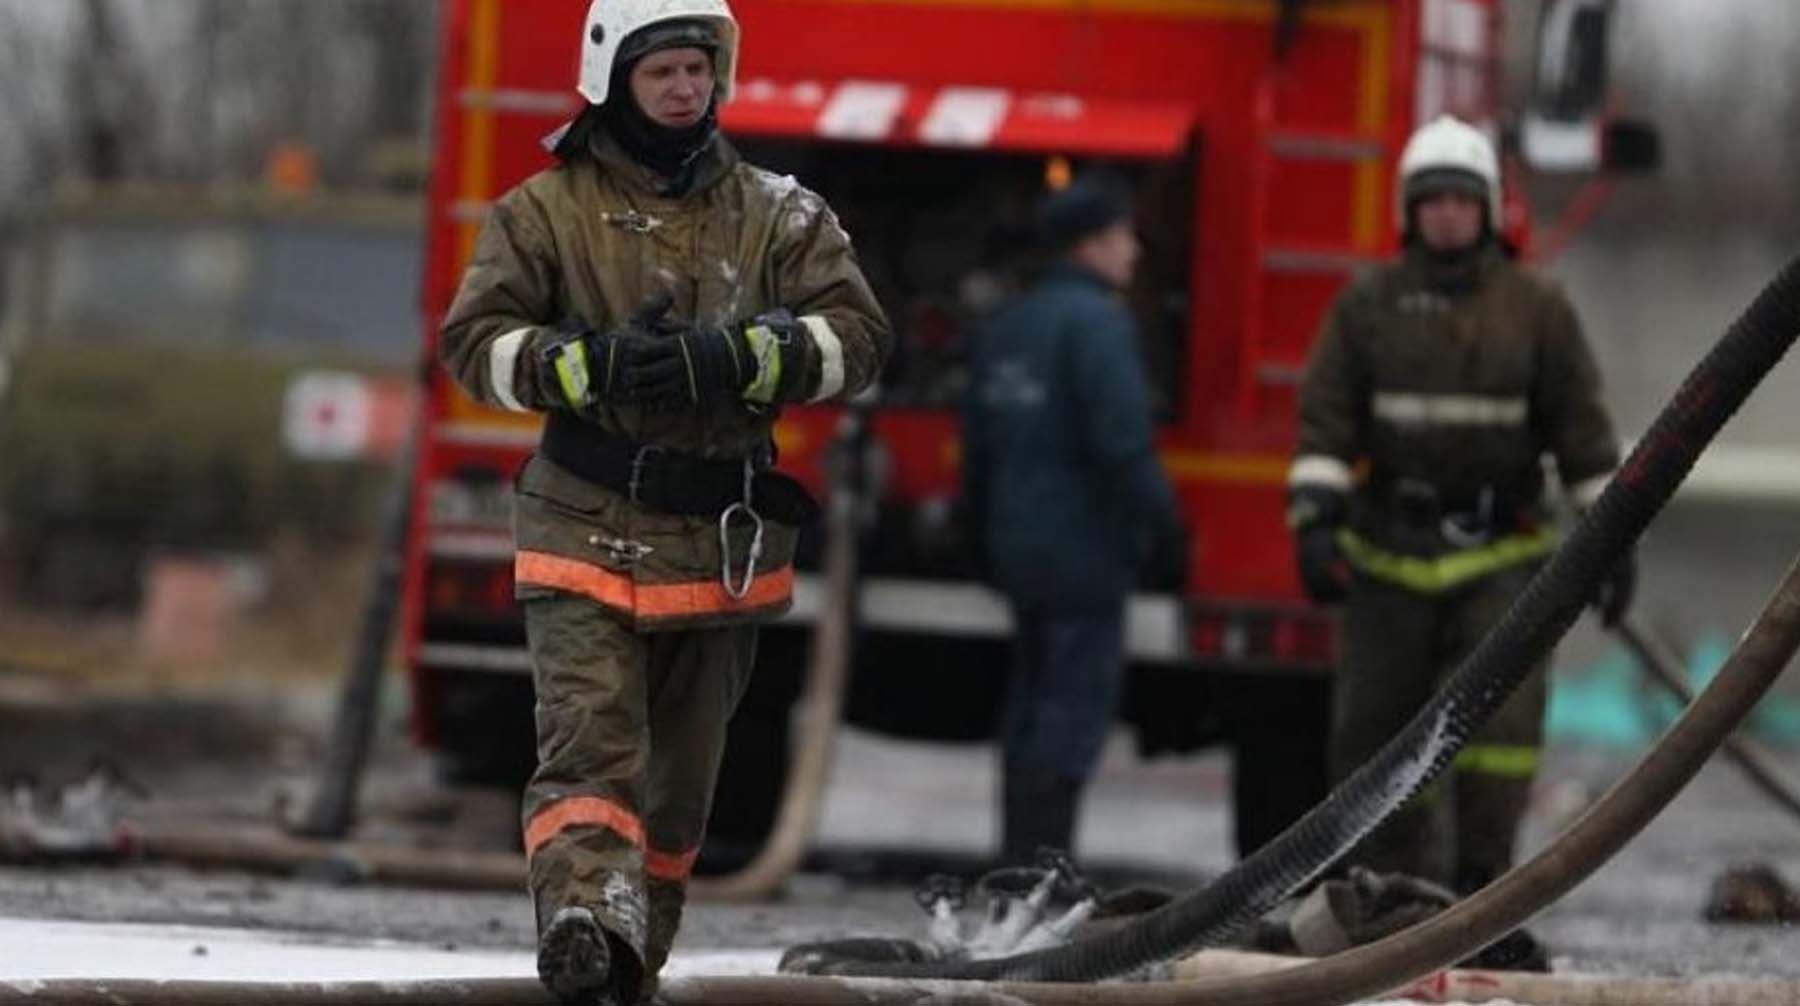 Два ребенка и двое взрослых смогли спастись при пожаре и были госпитализированы с ожогами Фото: © Global Look Press / МЧС России